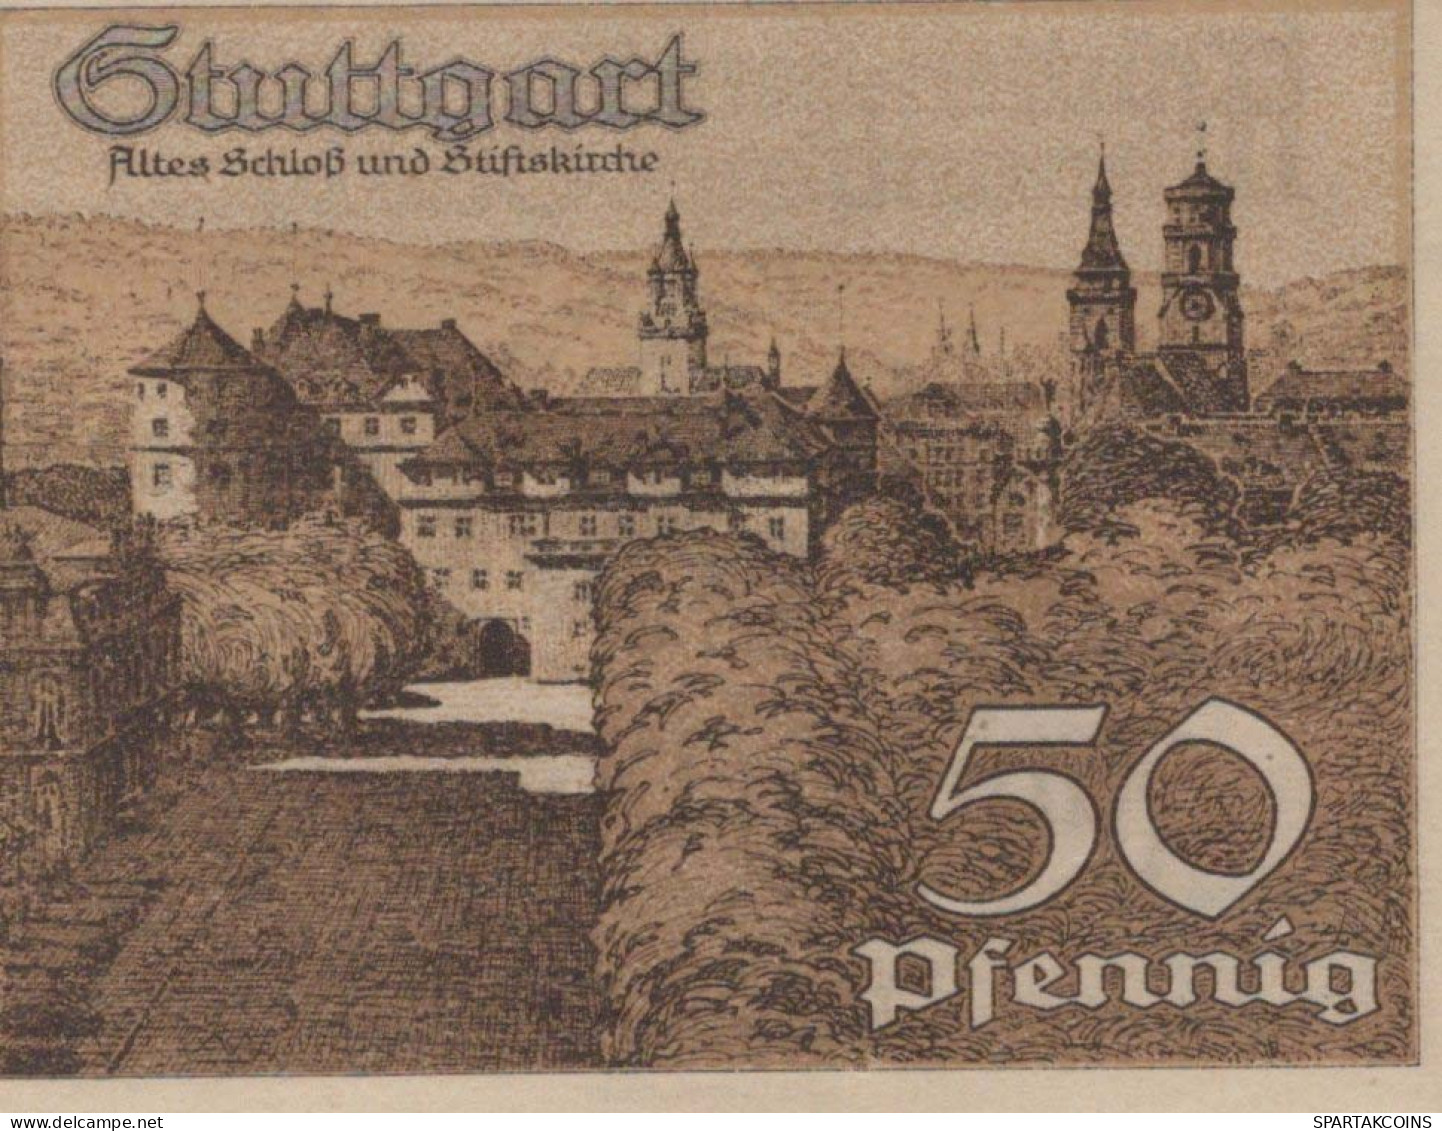 50 PFENNIG 1921 Stadt STUTTGART Württemberg UNC DEUTSCHLAND Notgeld #PC427 - [11] Local Banknote Issues